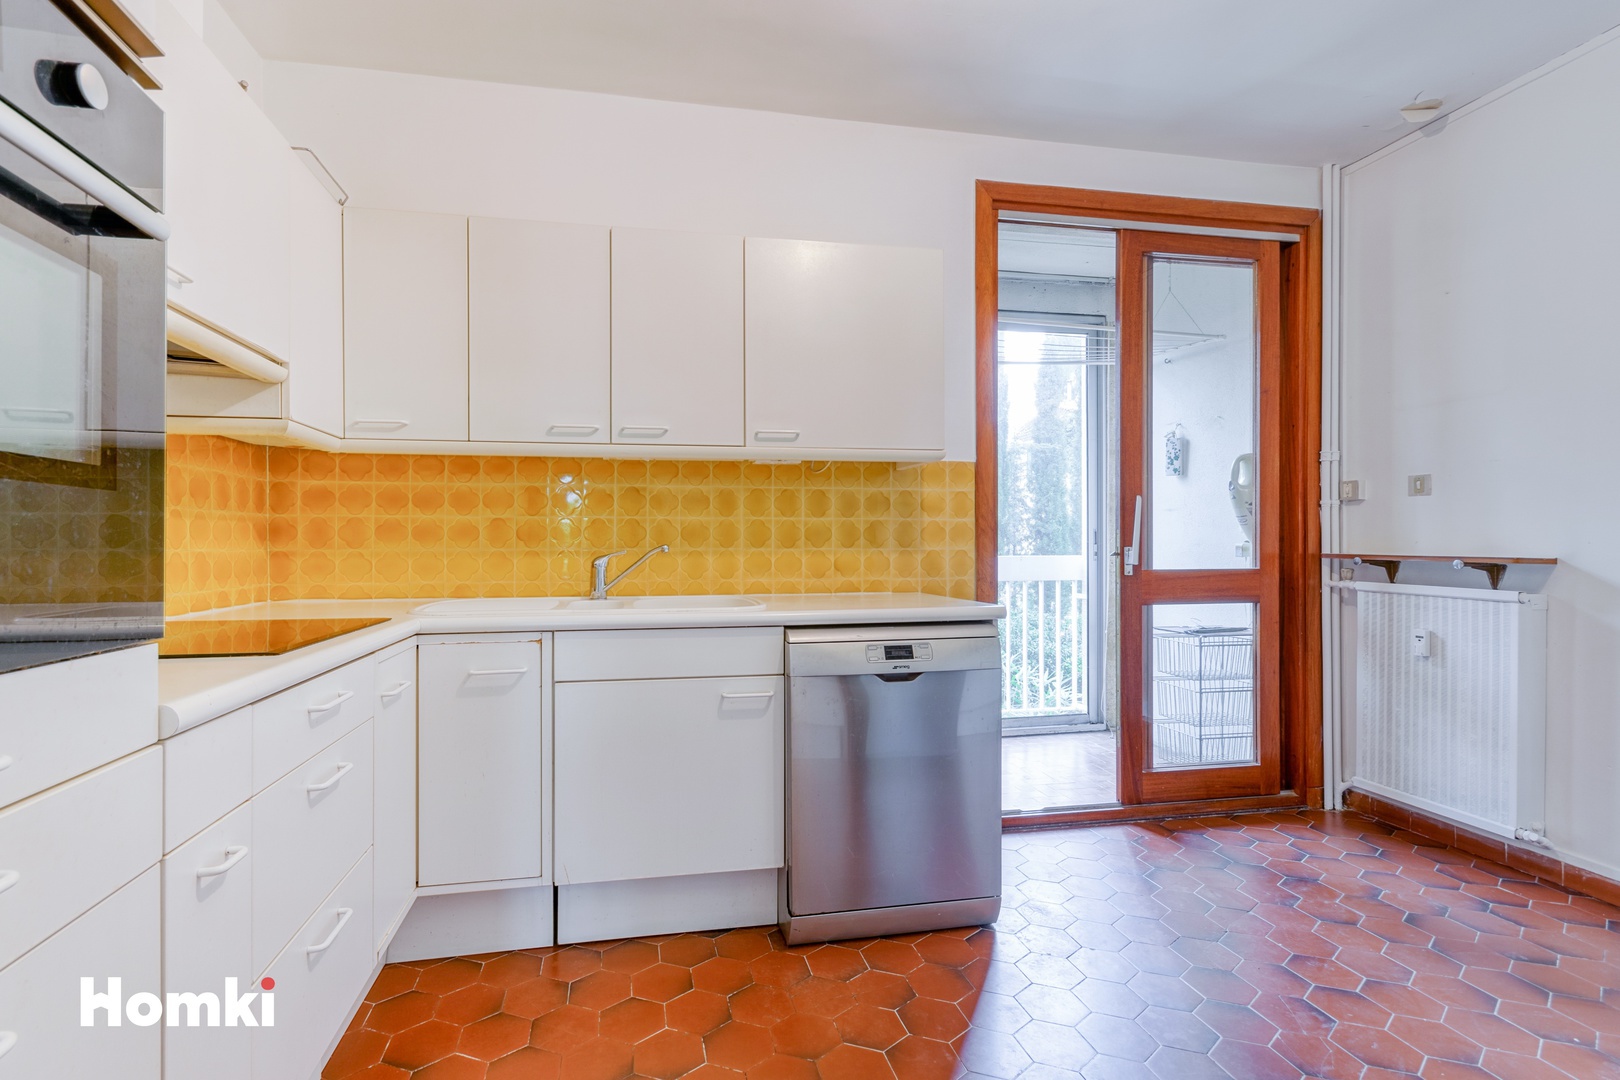 Homki - Vente Appartement  de 85.0 m² à Aix-en-Provence 13100